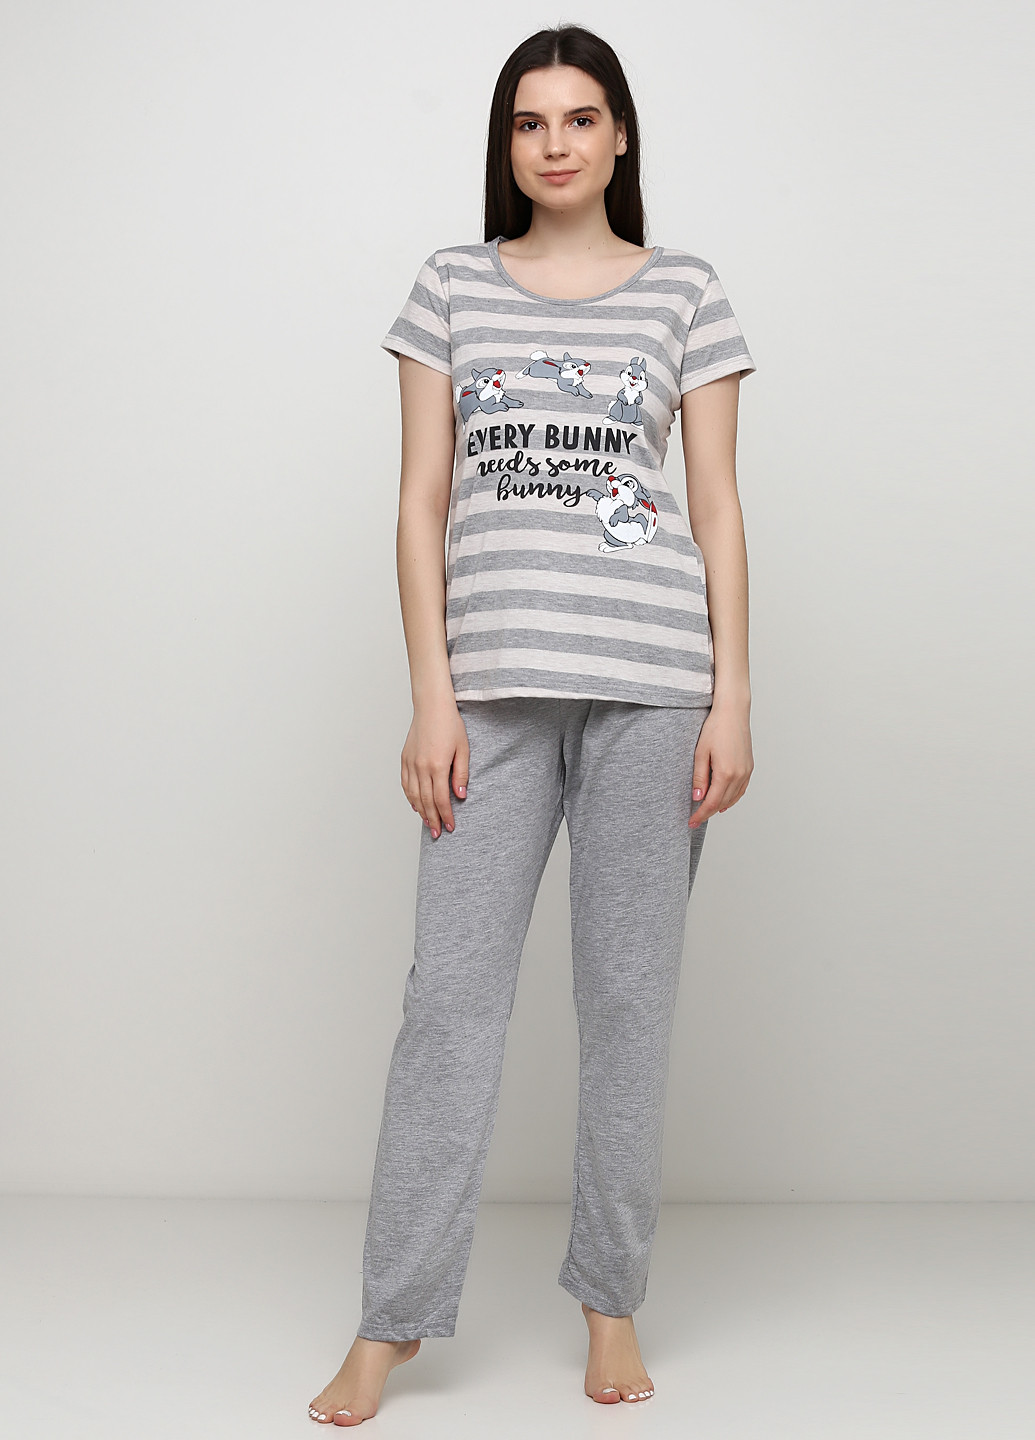 Серая всесезон пижама (футболка, брюки) футболка + брюки Sexen